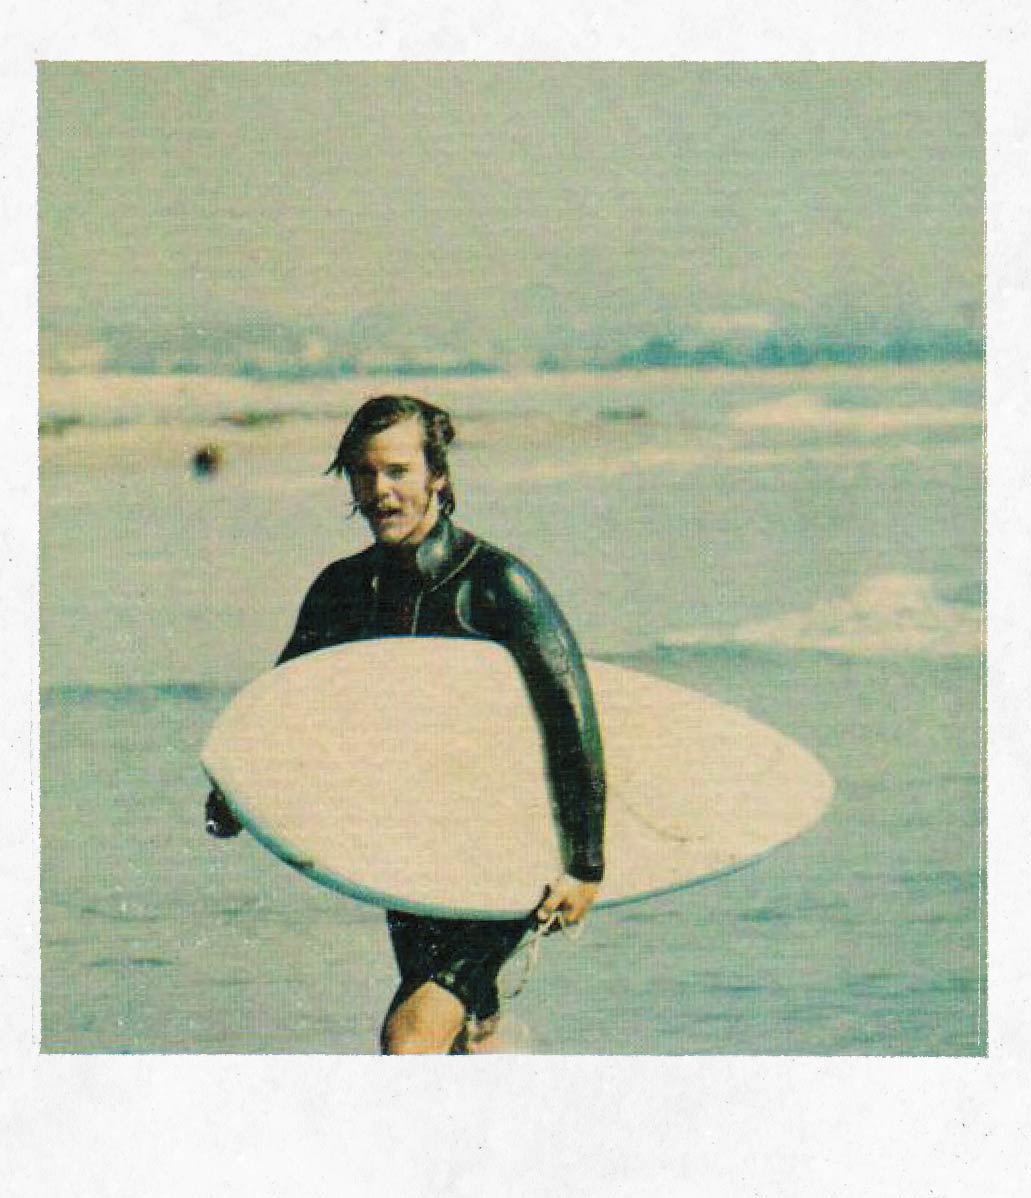 vintage surfer photo